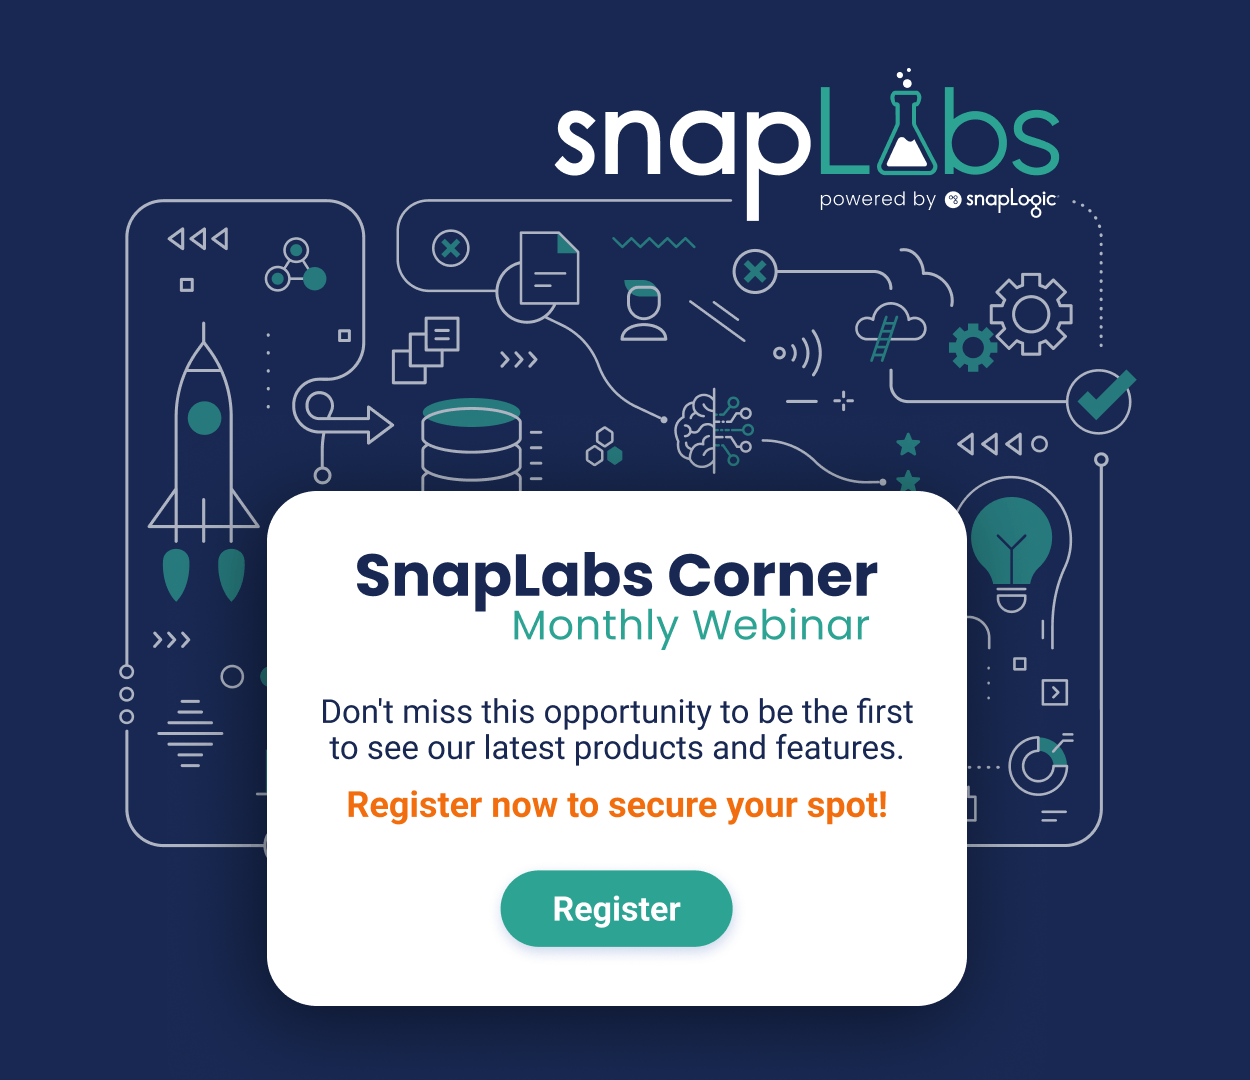 SnapLabs Corner monthly webinar